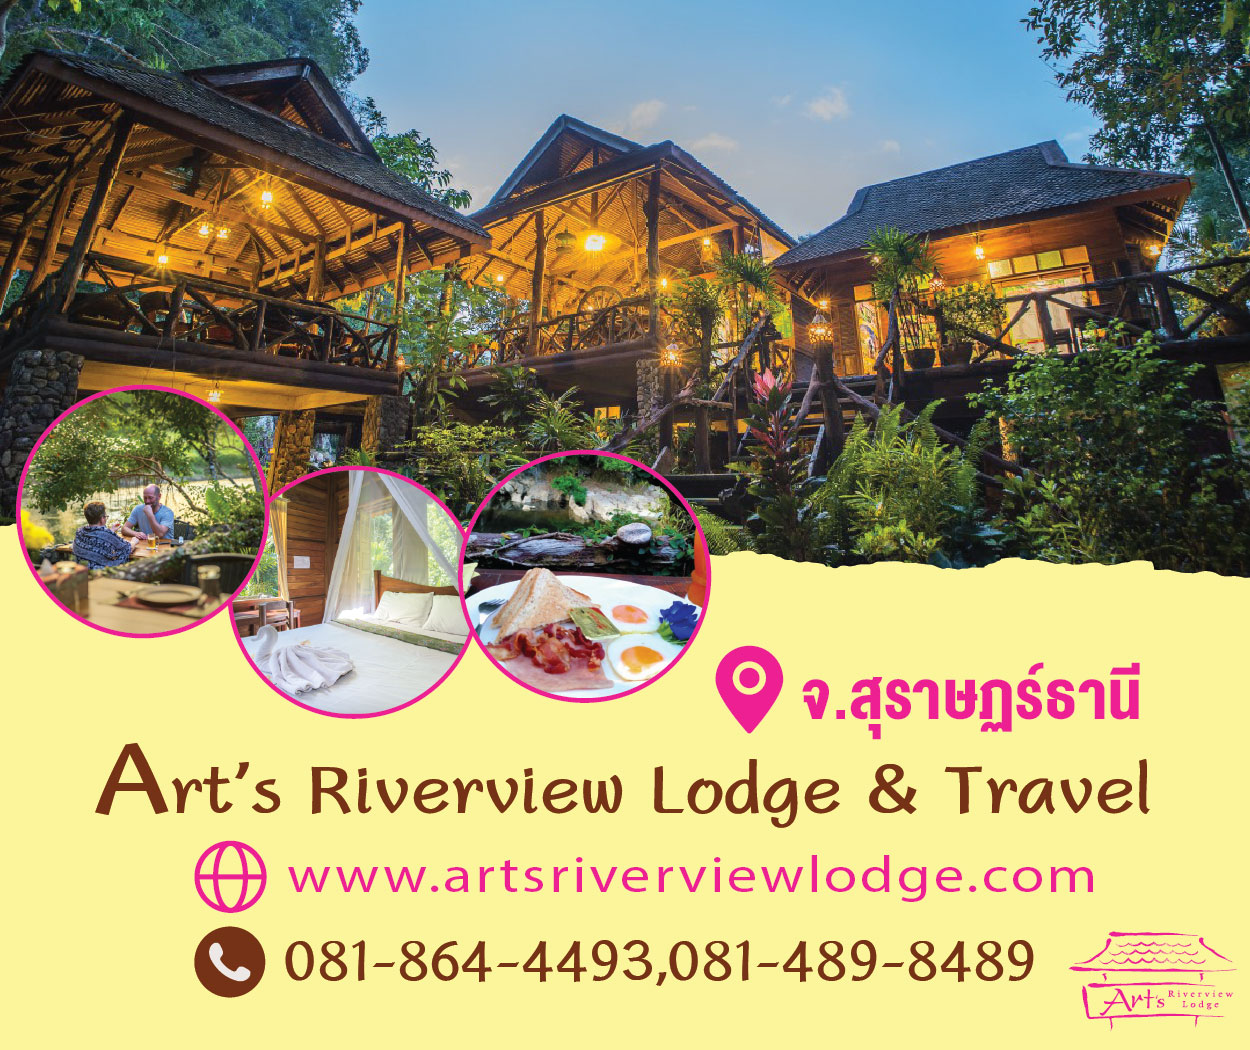 Art’s Riverview Lodge